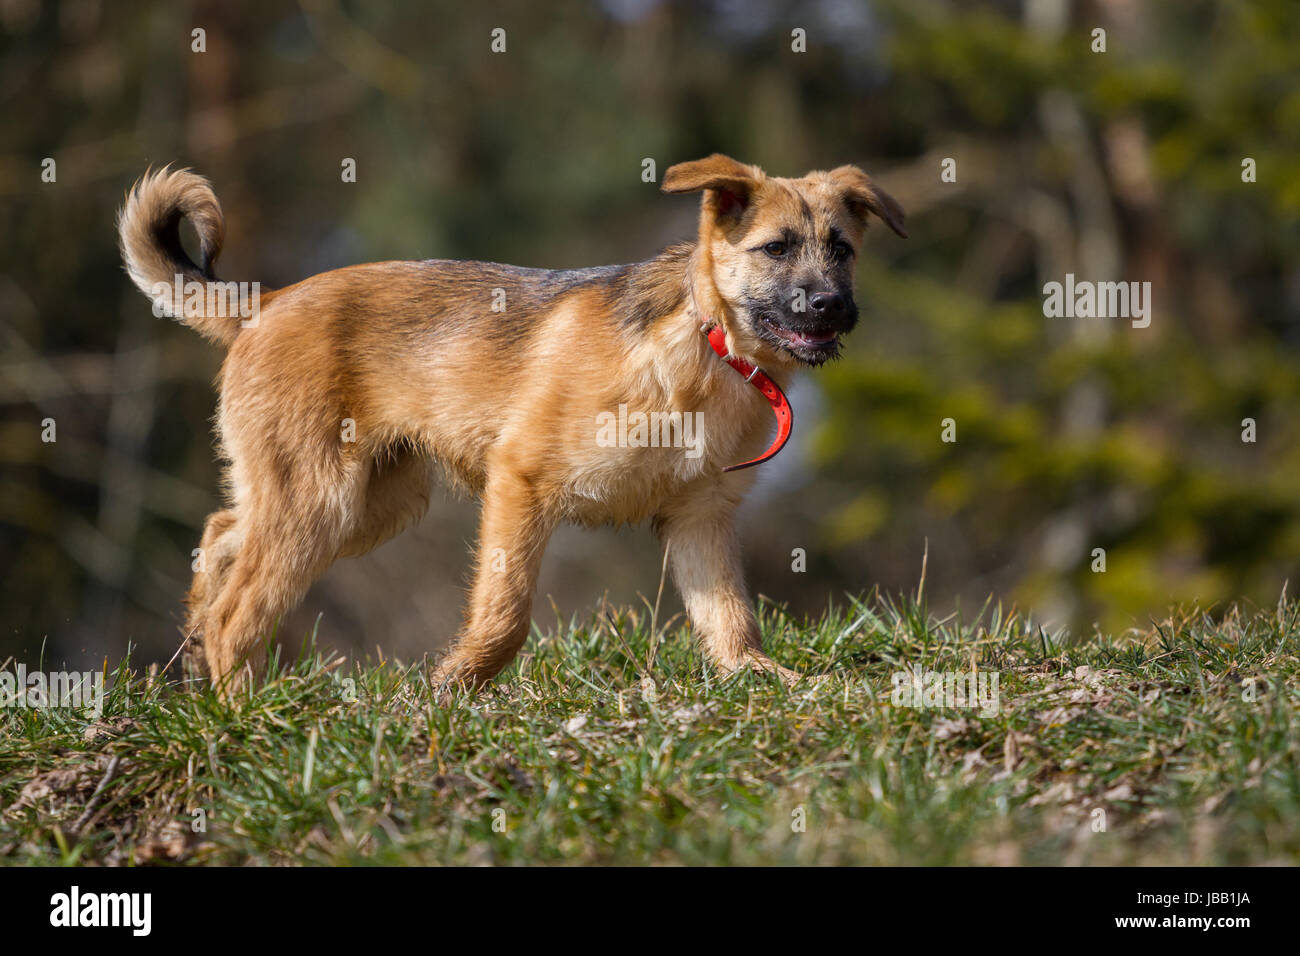 Ein Schäferhund Welpen geht langsam durchs Bild, sein noch viel zu großes Halsband steht richtig ab. Stock Photo